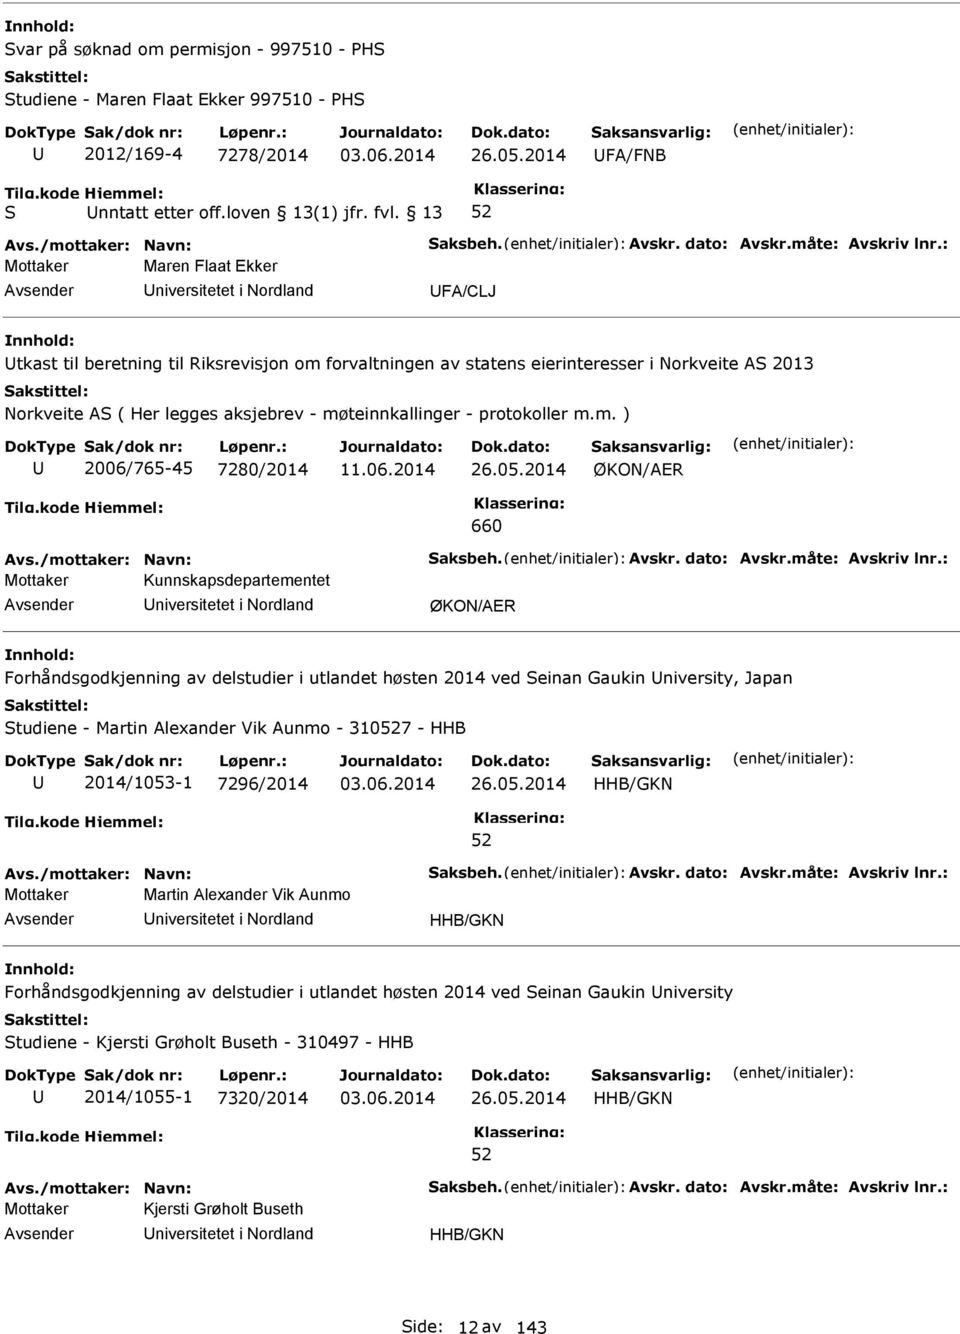 møteinnkallinger - protokoller m.m. ) 2006/765-45 7280/2014 26.05.